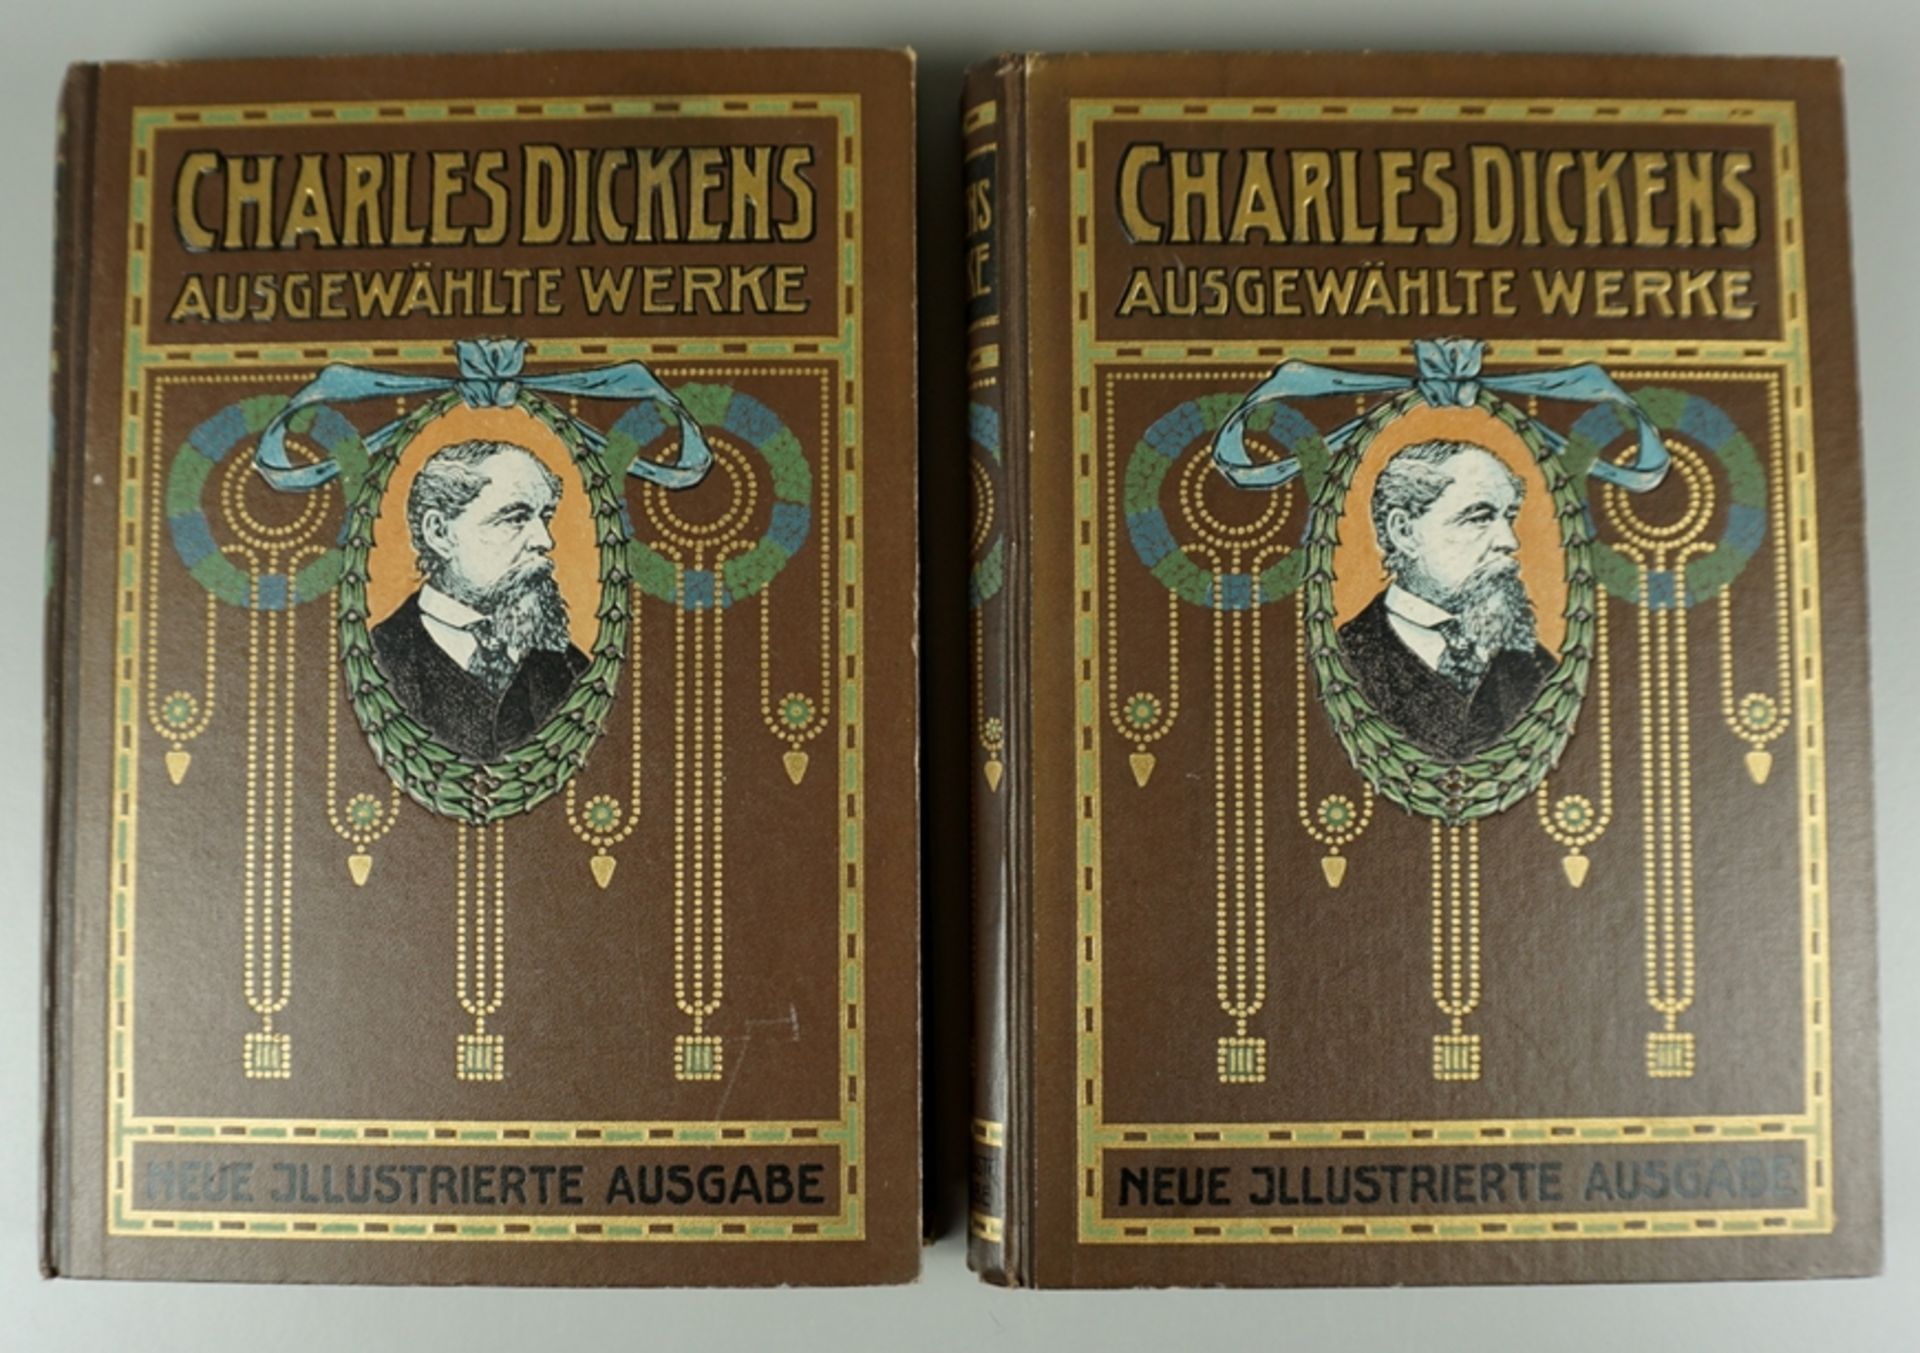 Charles Dickens ausgewählte Werke, Neue illustrierte Ausgabe in 2 Bänden, um 1900 (o.Jz.) - Image 2 of 2